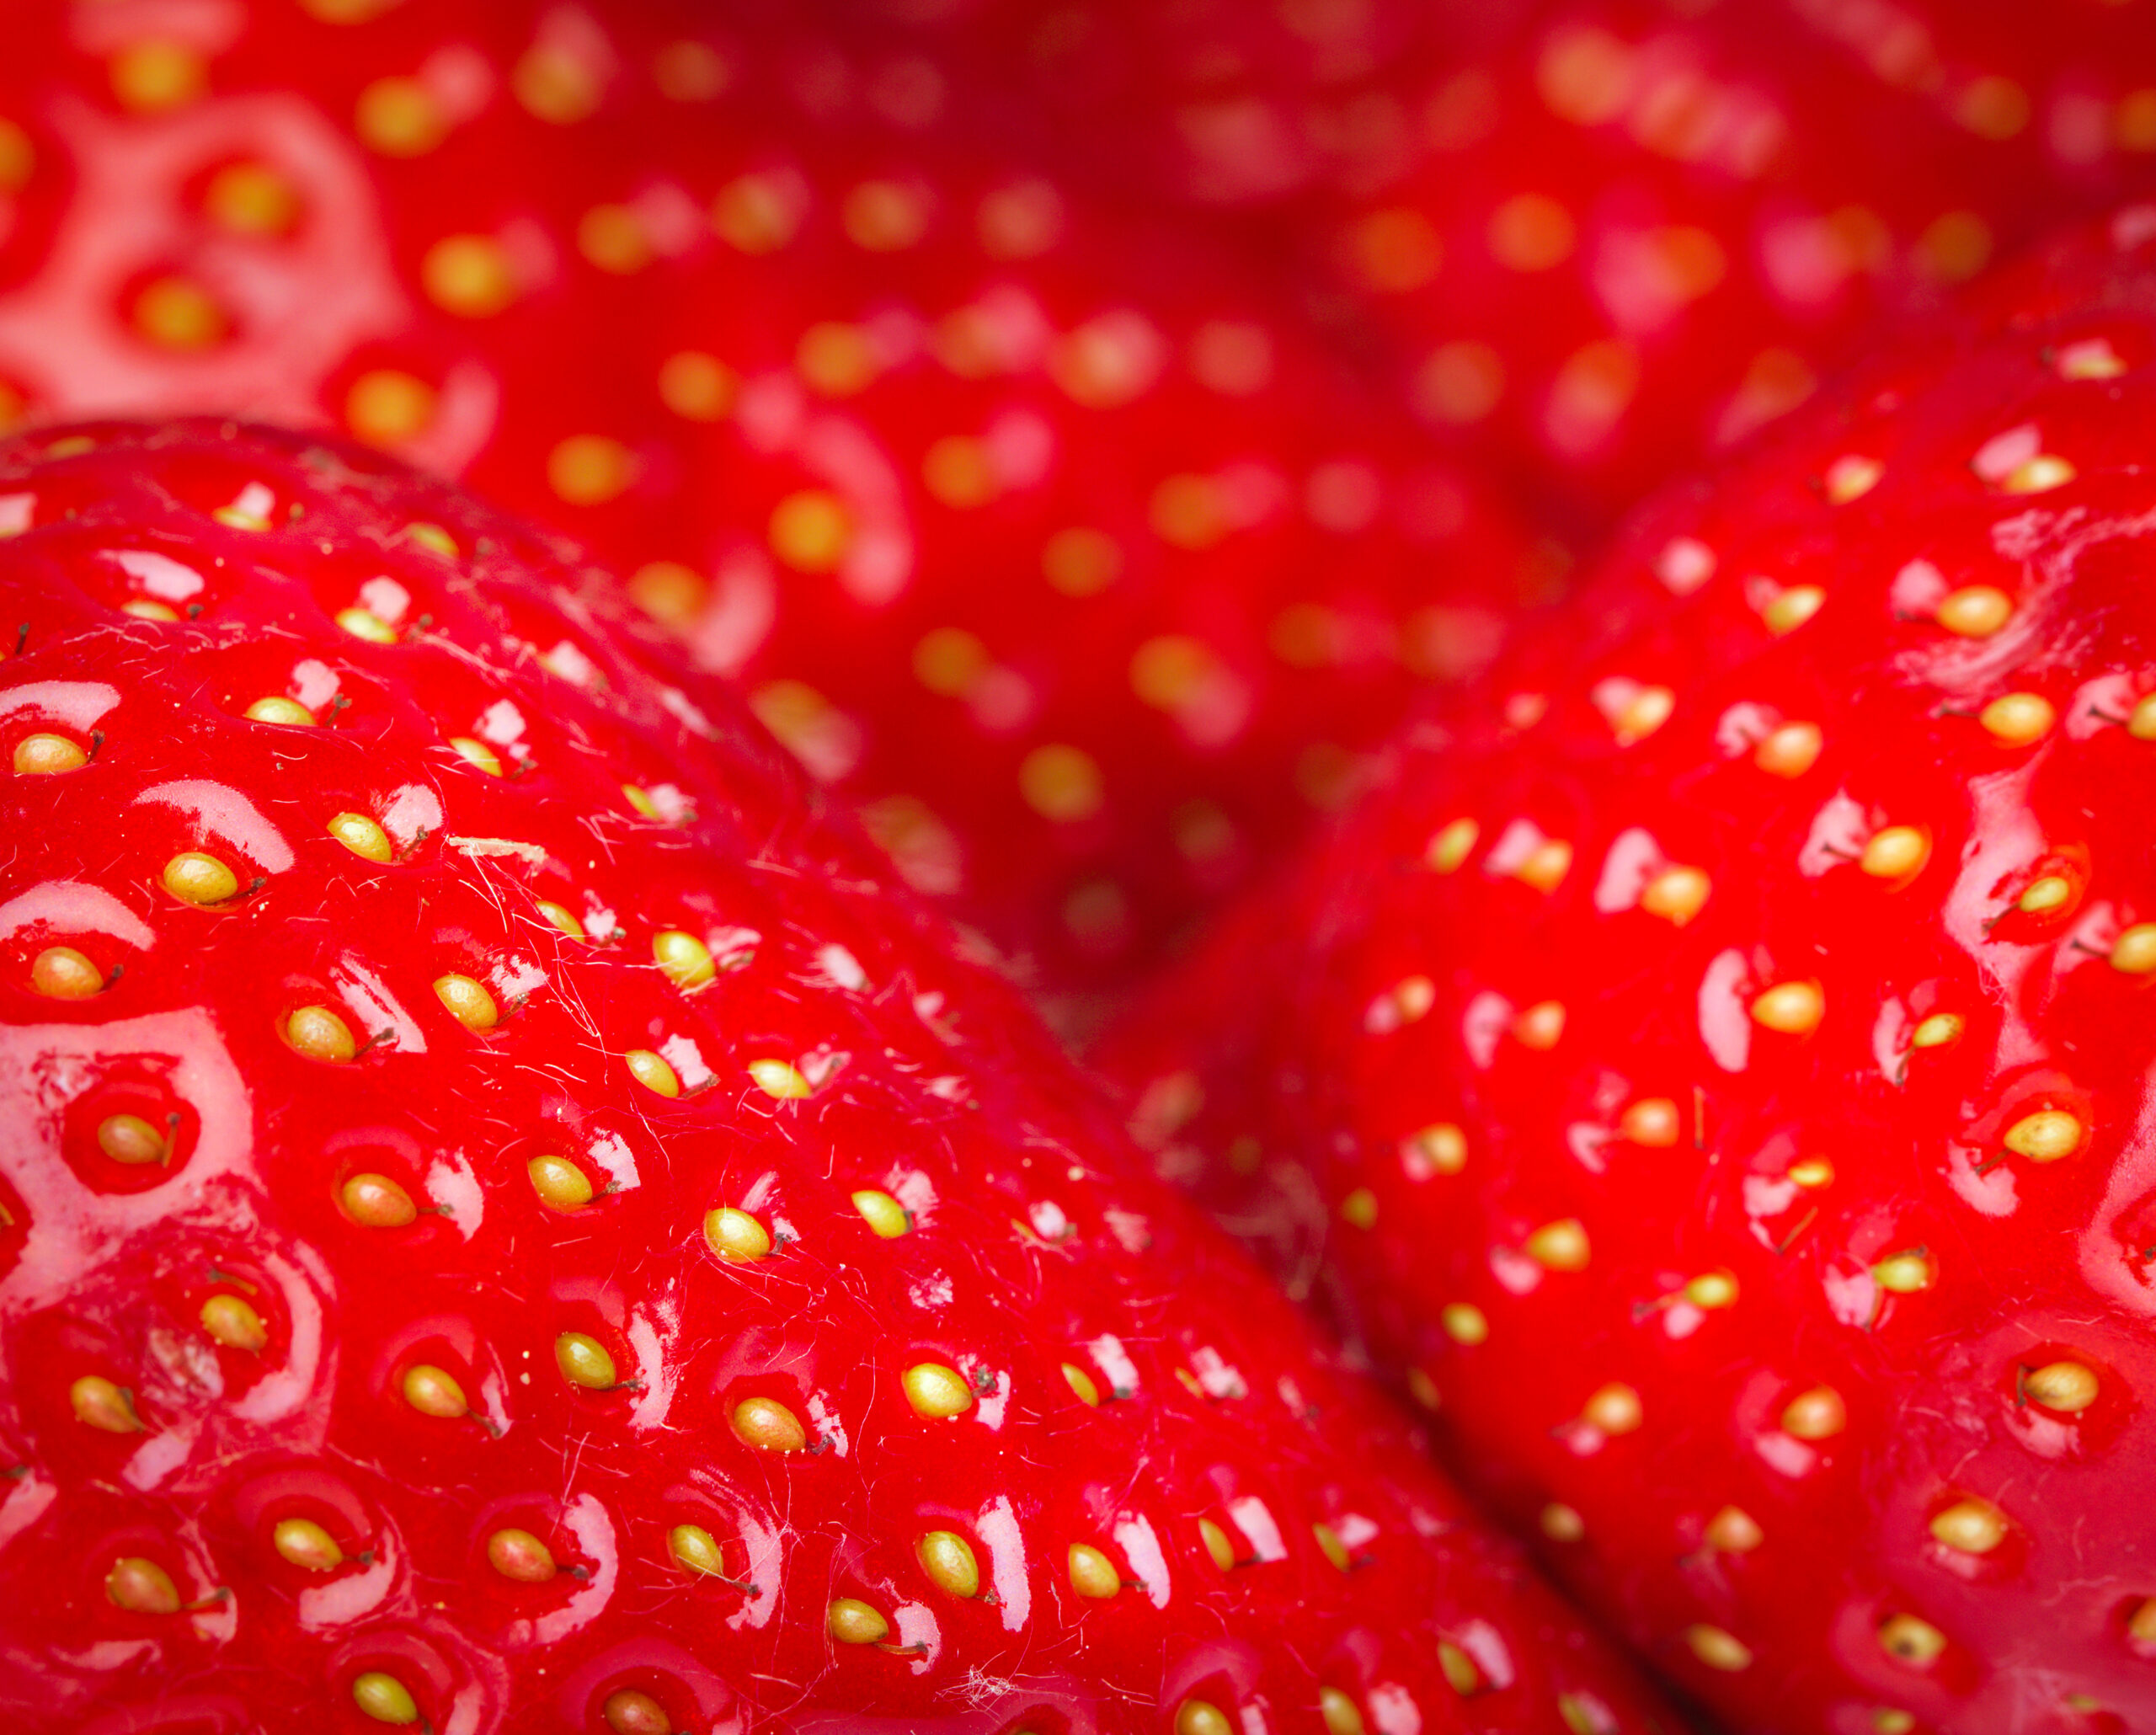 strawberries-2021-08-26-16-35-46-utc